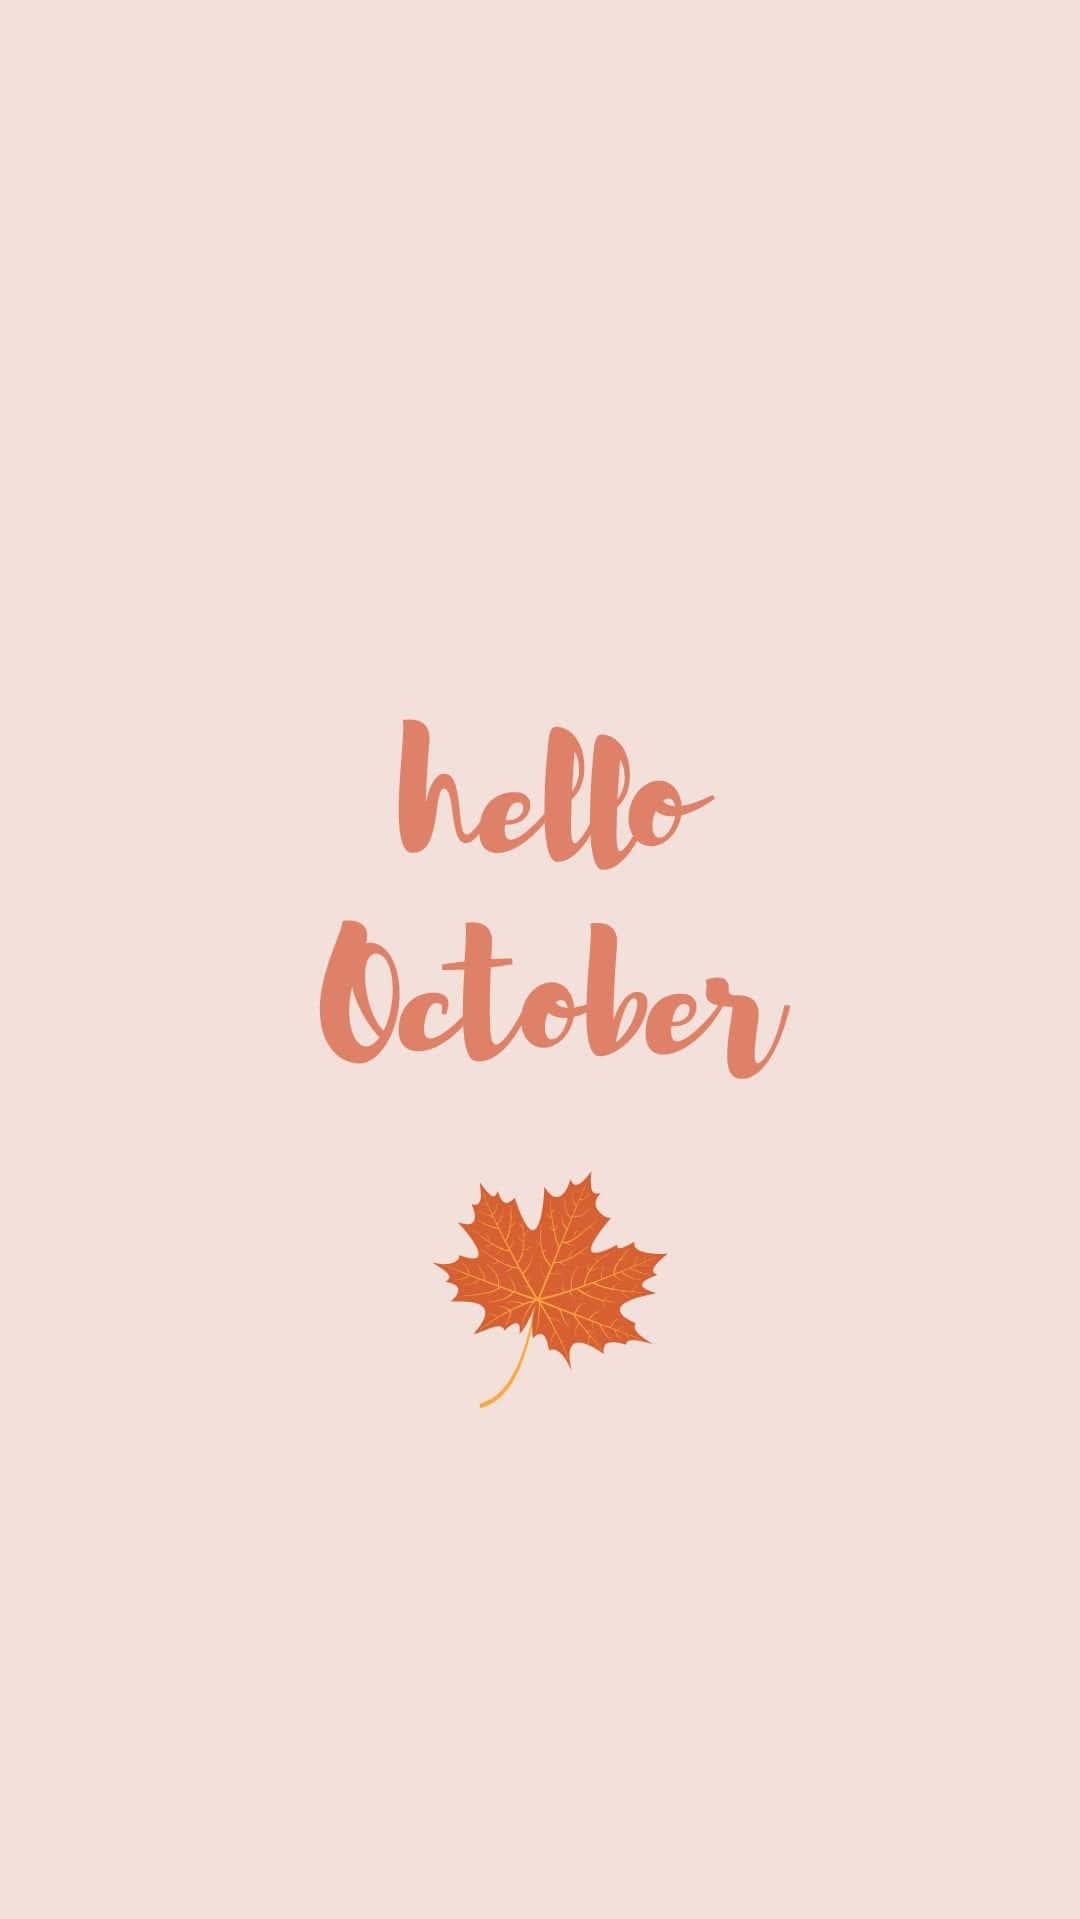 Download October Aesthetic Hello October Wallpaper